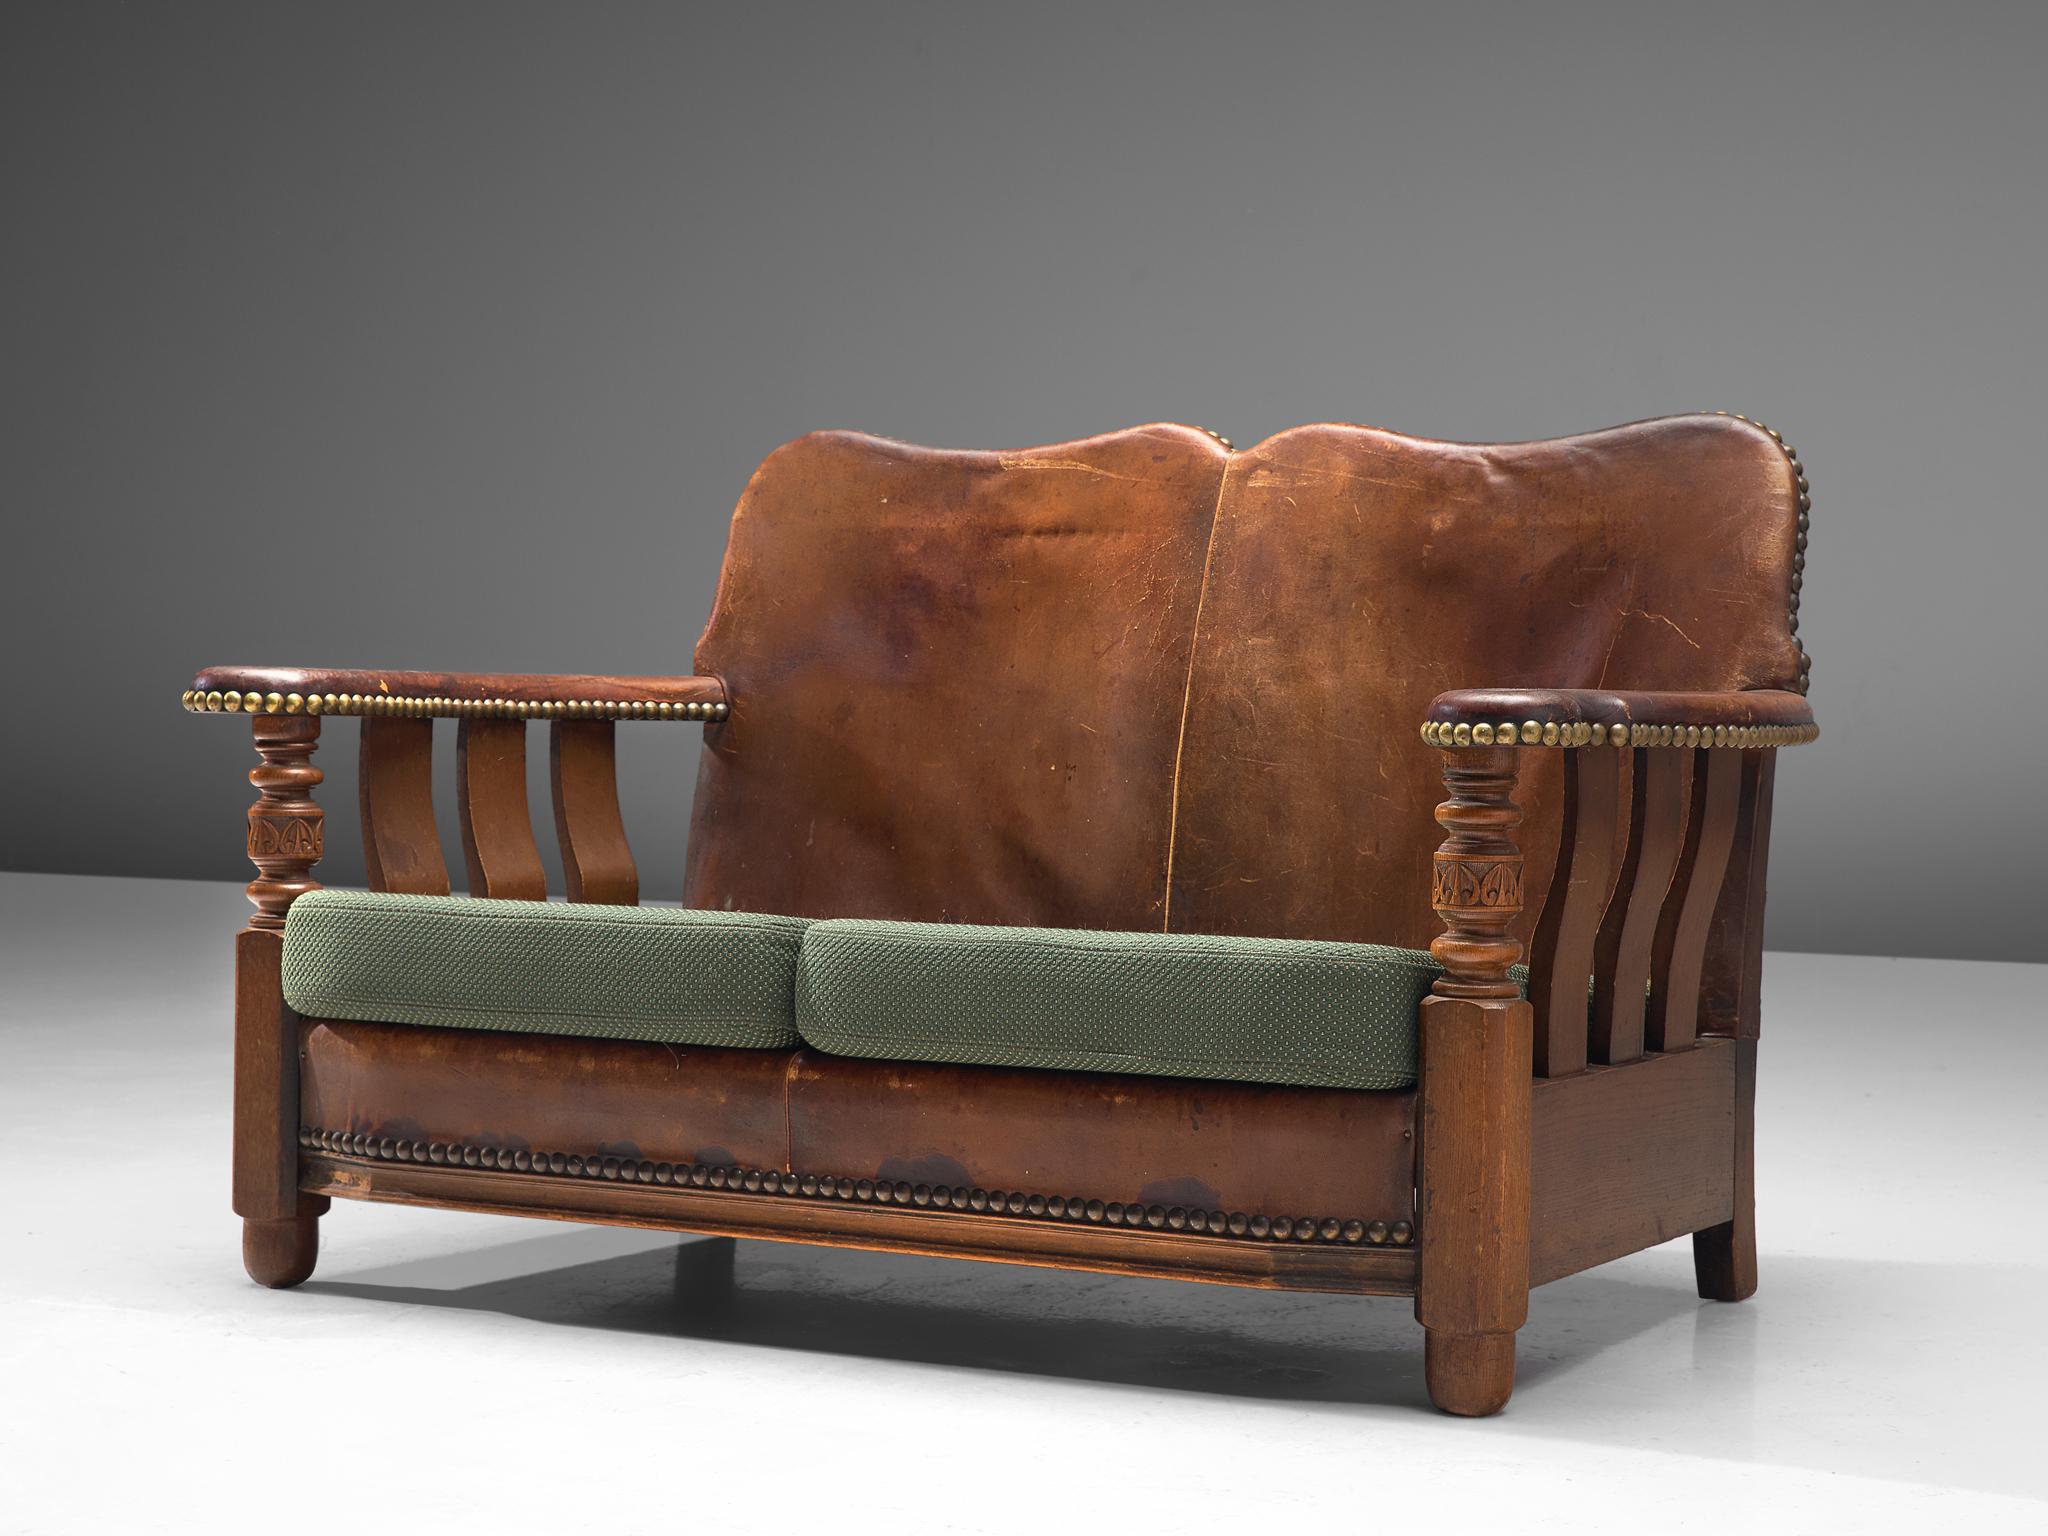 Couch oder Sofa, gebeiztes Holz, Leder, Stoff, Messing, Dänemark, 1920er Jahre.

Außergewöhnliches Beispiel für frühes dänisches Design mit robuster, klobiger Ästhetik. Das Gestell des Sofas ist aus gebeiztem Holz gefertigt. Die Rückenlehne und die